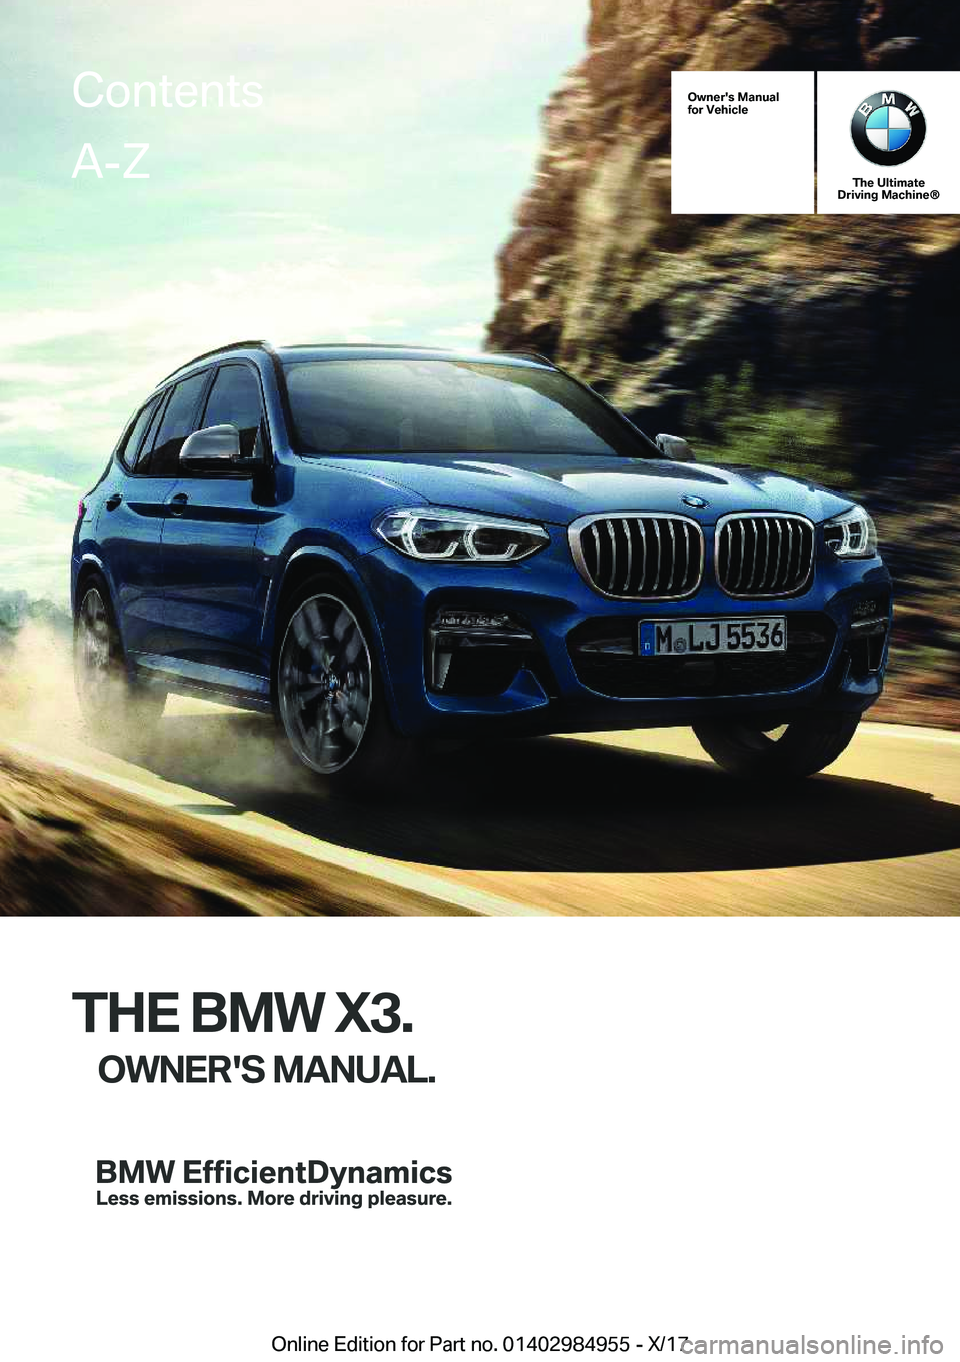 BMW X3 2018  Owners Manual �O�w�n�e�r�'�s��M�a�n�u�a�l
�f�o�r��V�e�h�i�c�l�e
�T�h�e��U�l�t�i�m�a�t�e
�D�r�i�v�i�n�g��M�a�c�h�i�n�e�n
�T�H�E��B�M�W��X�3�.
�O�W�N�E�R�'�S��M�A�N�U�A�L�.
�C�o�n�t�e�n�t�s�A�-�Z
�O�n�